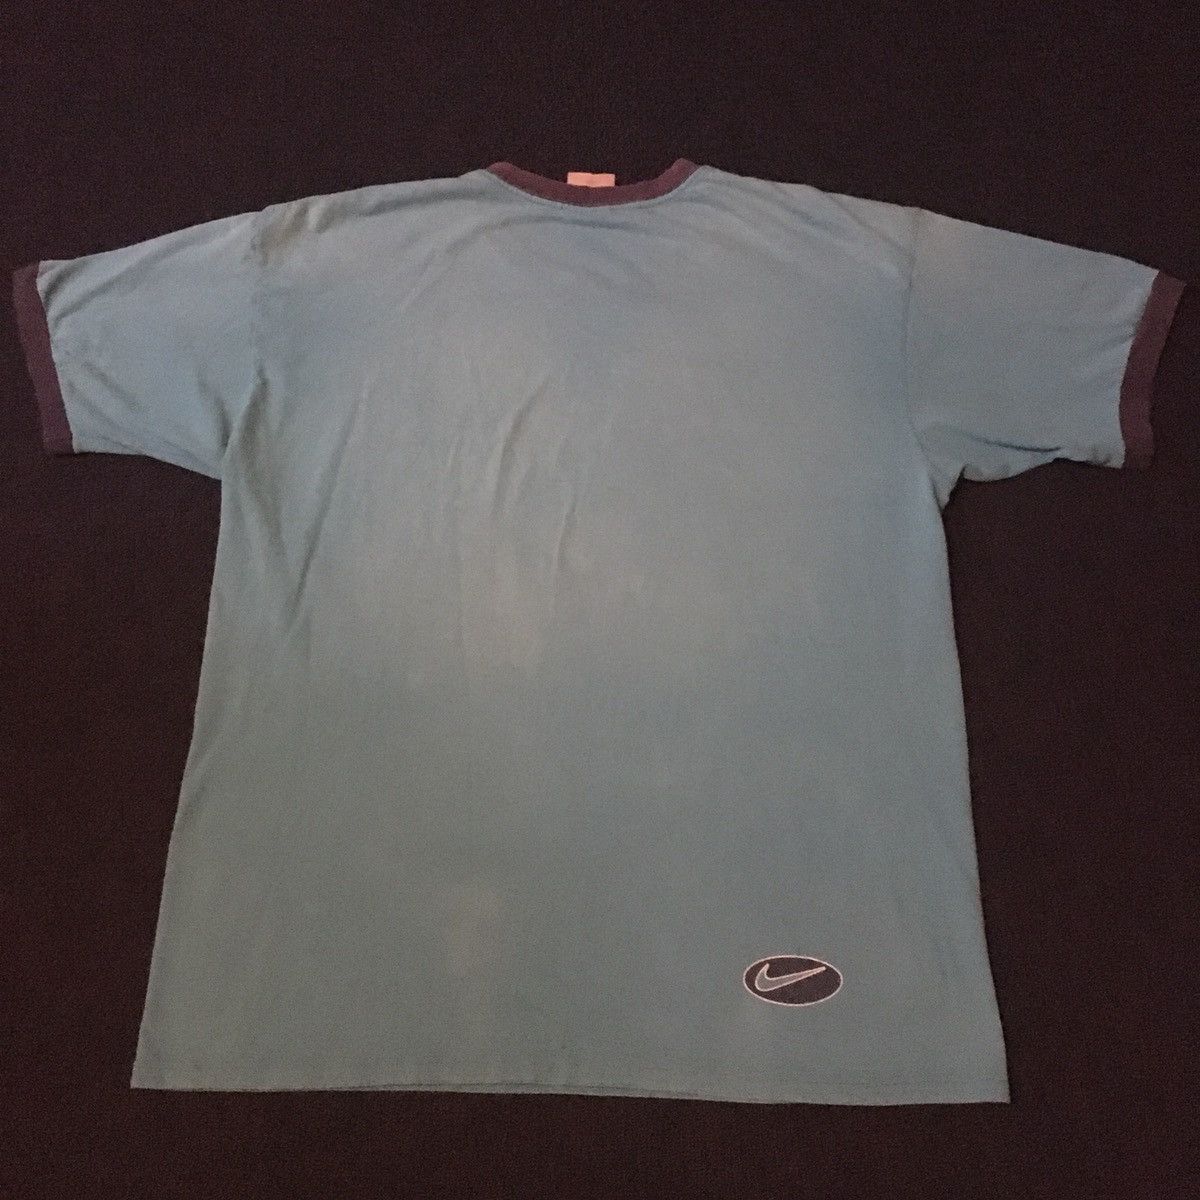 Nike Vintage 2000s Nike Center Swoosh Faded Logo Ringer Tee Shirt Size US L / EU 52-54 / 3 - 3 Thumbnail